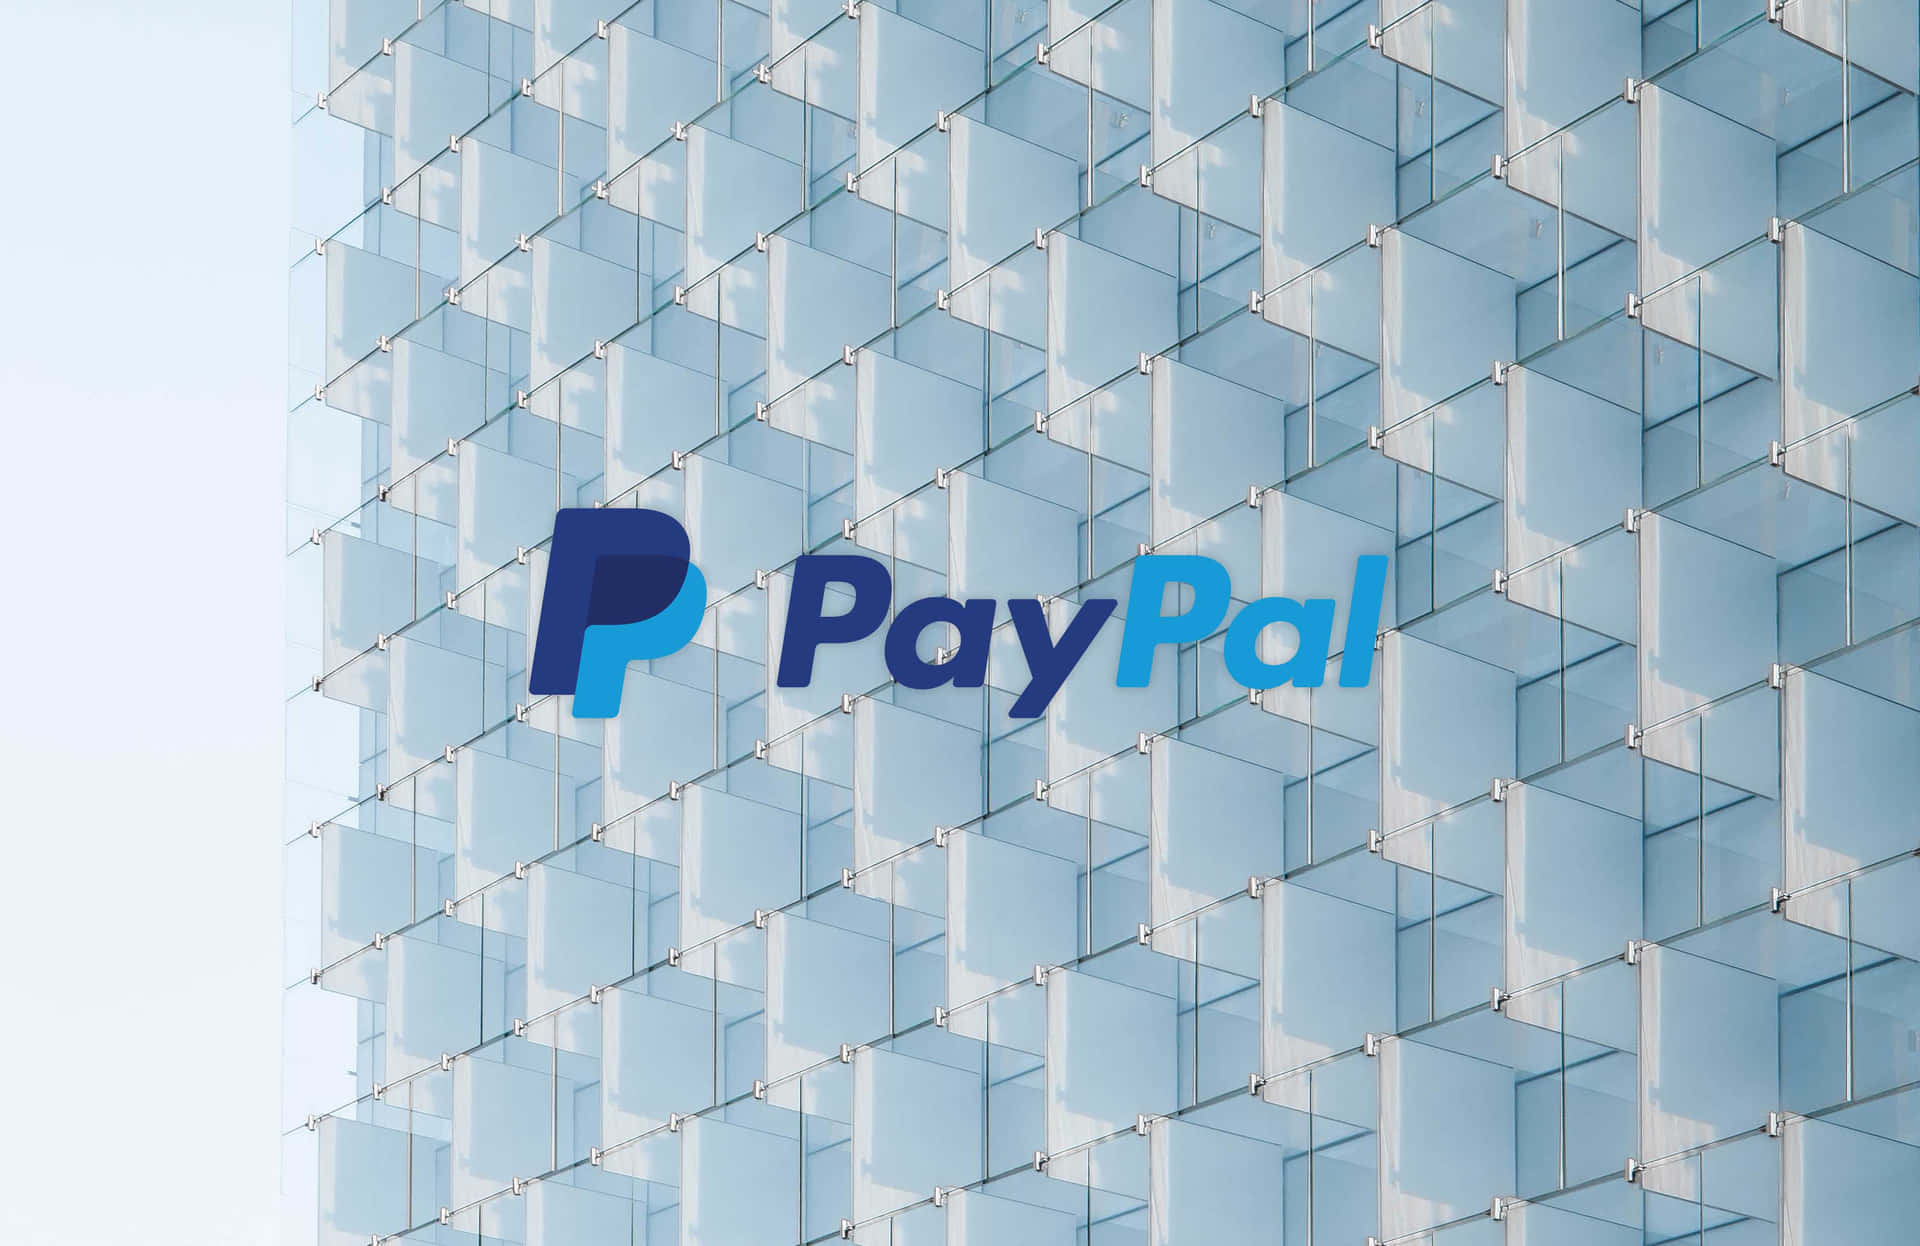 Paypallogotyp På En Byggnad